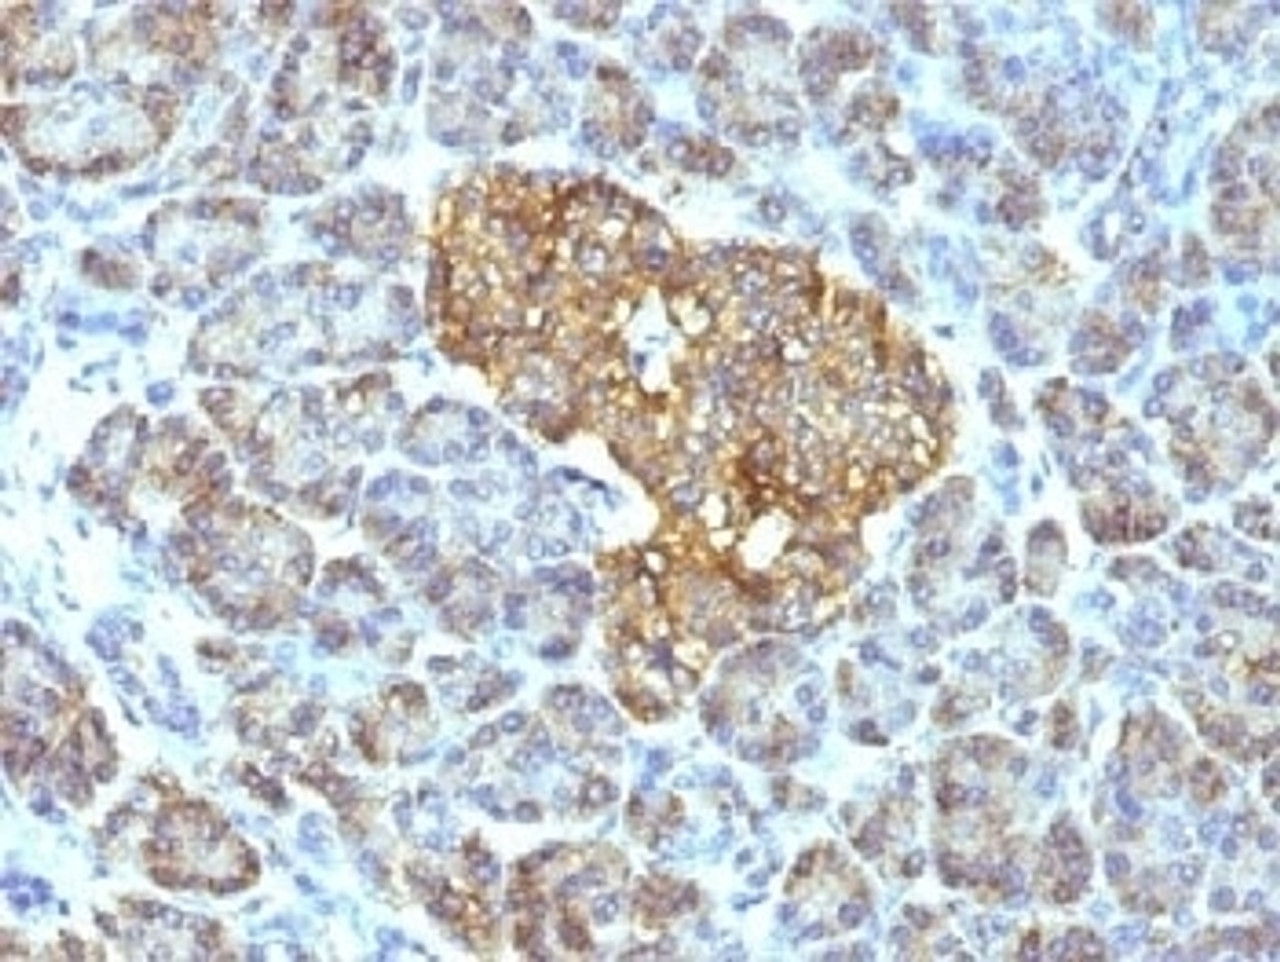 IHC testing of FFPE human pancreas with HSP60 antibody